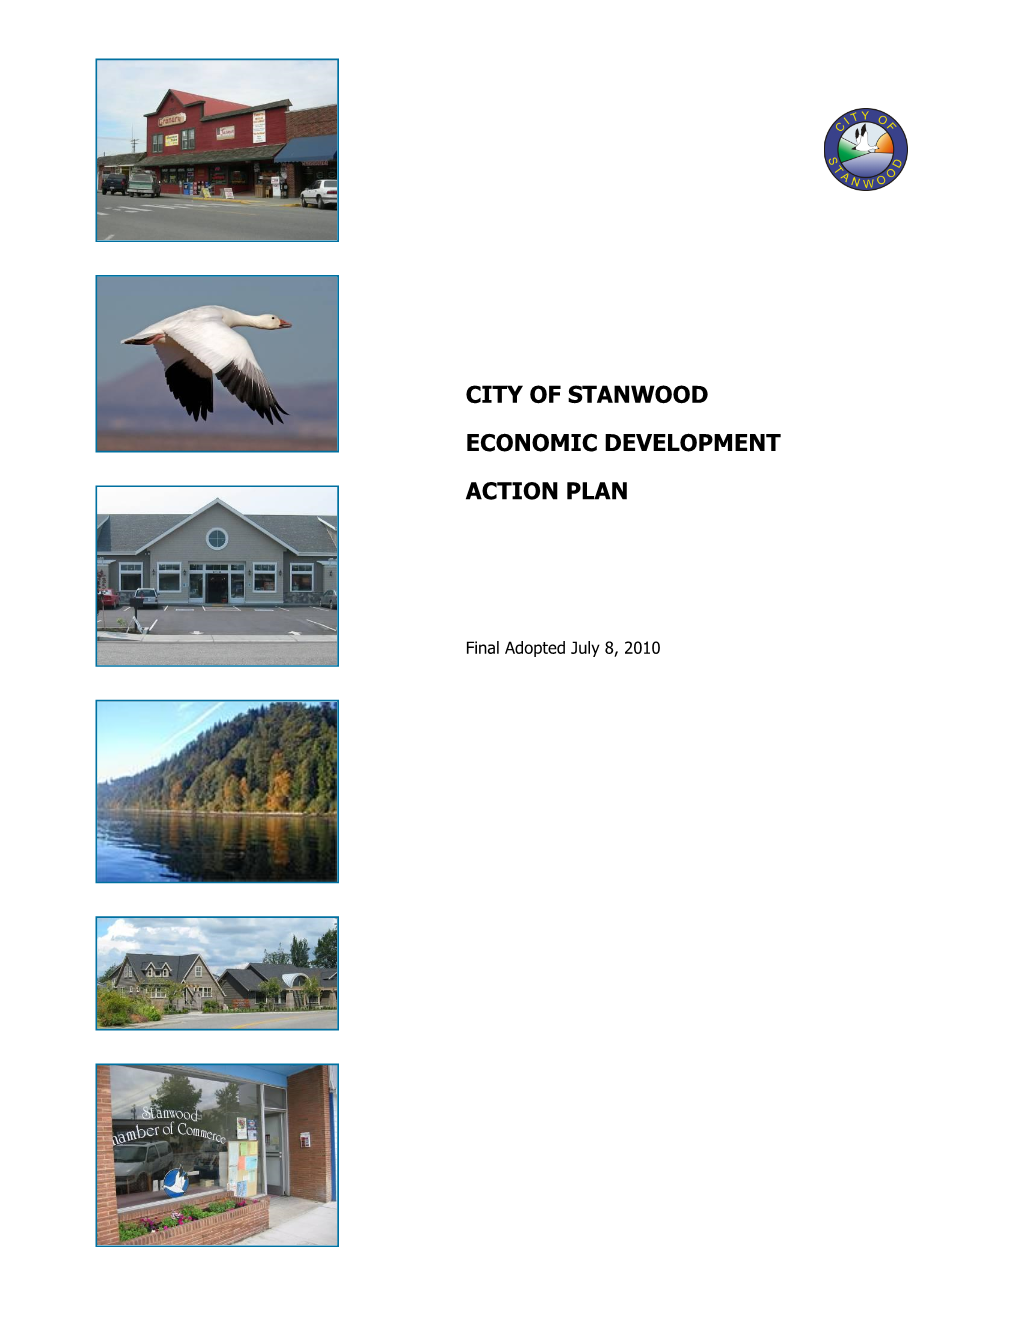 City of Stanwood Economic Development Action Plan